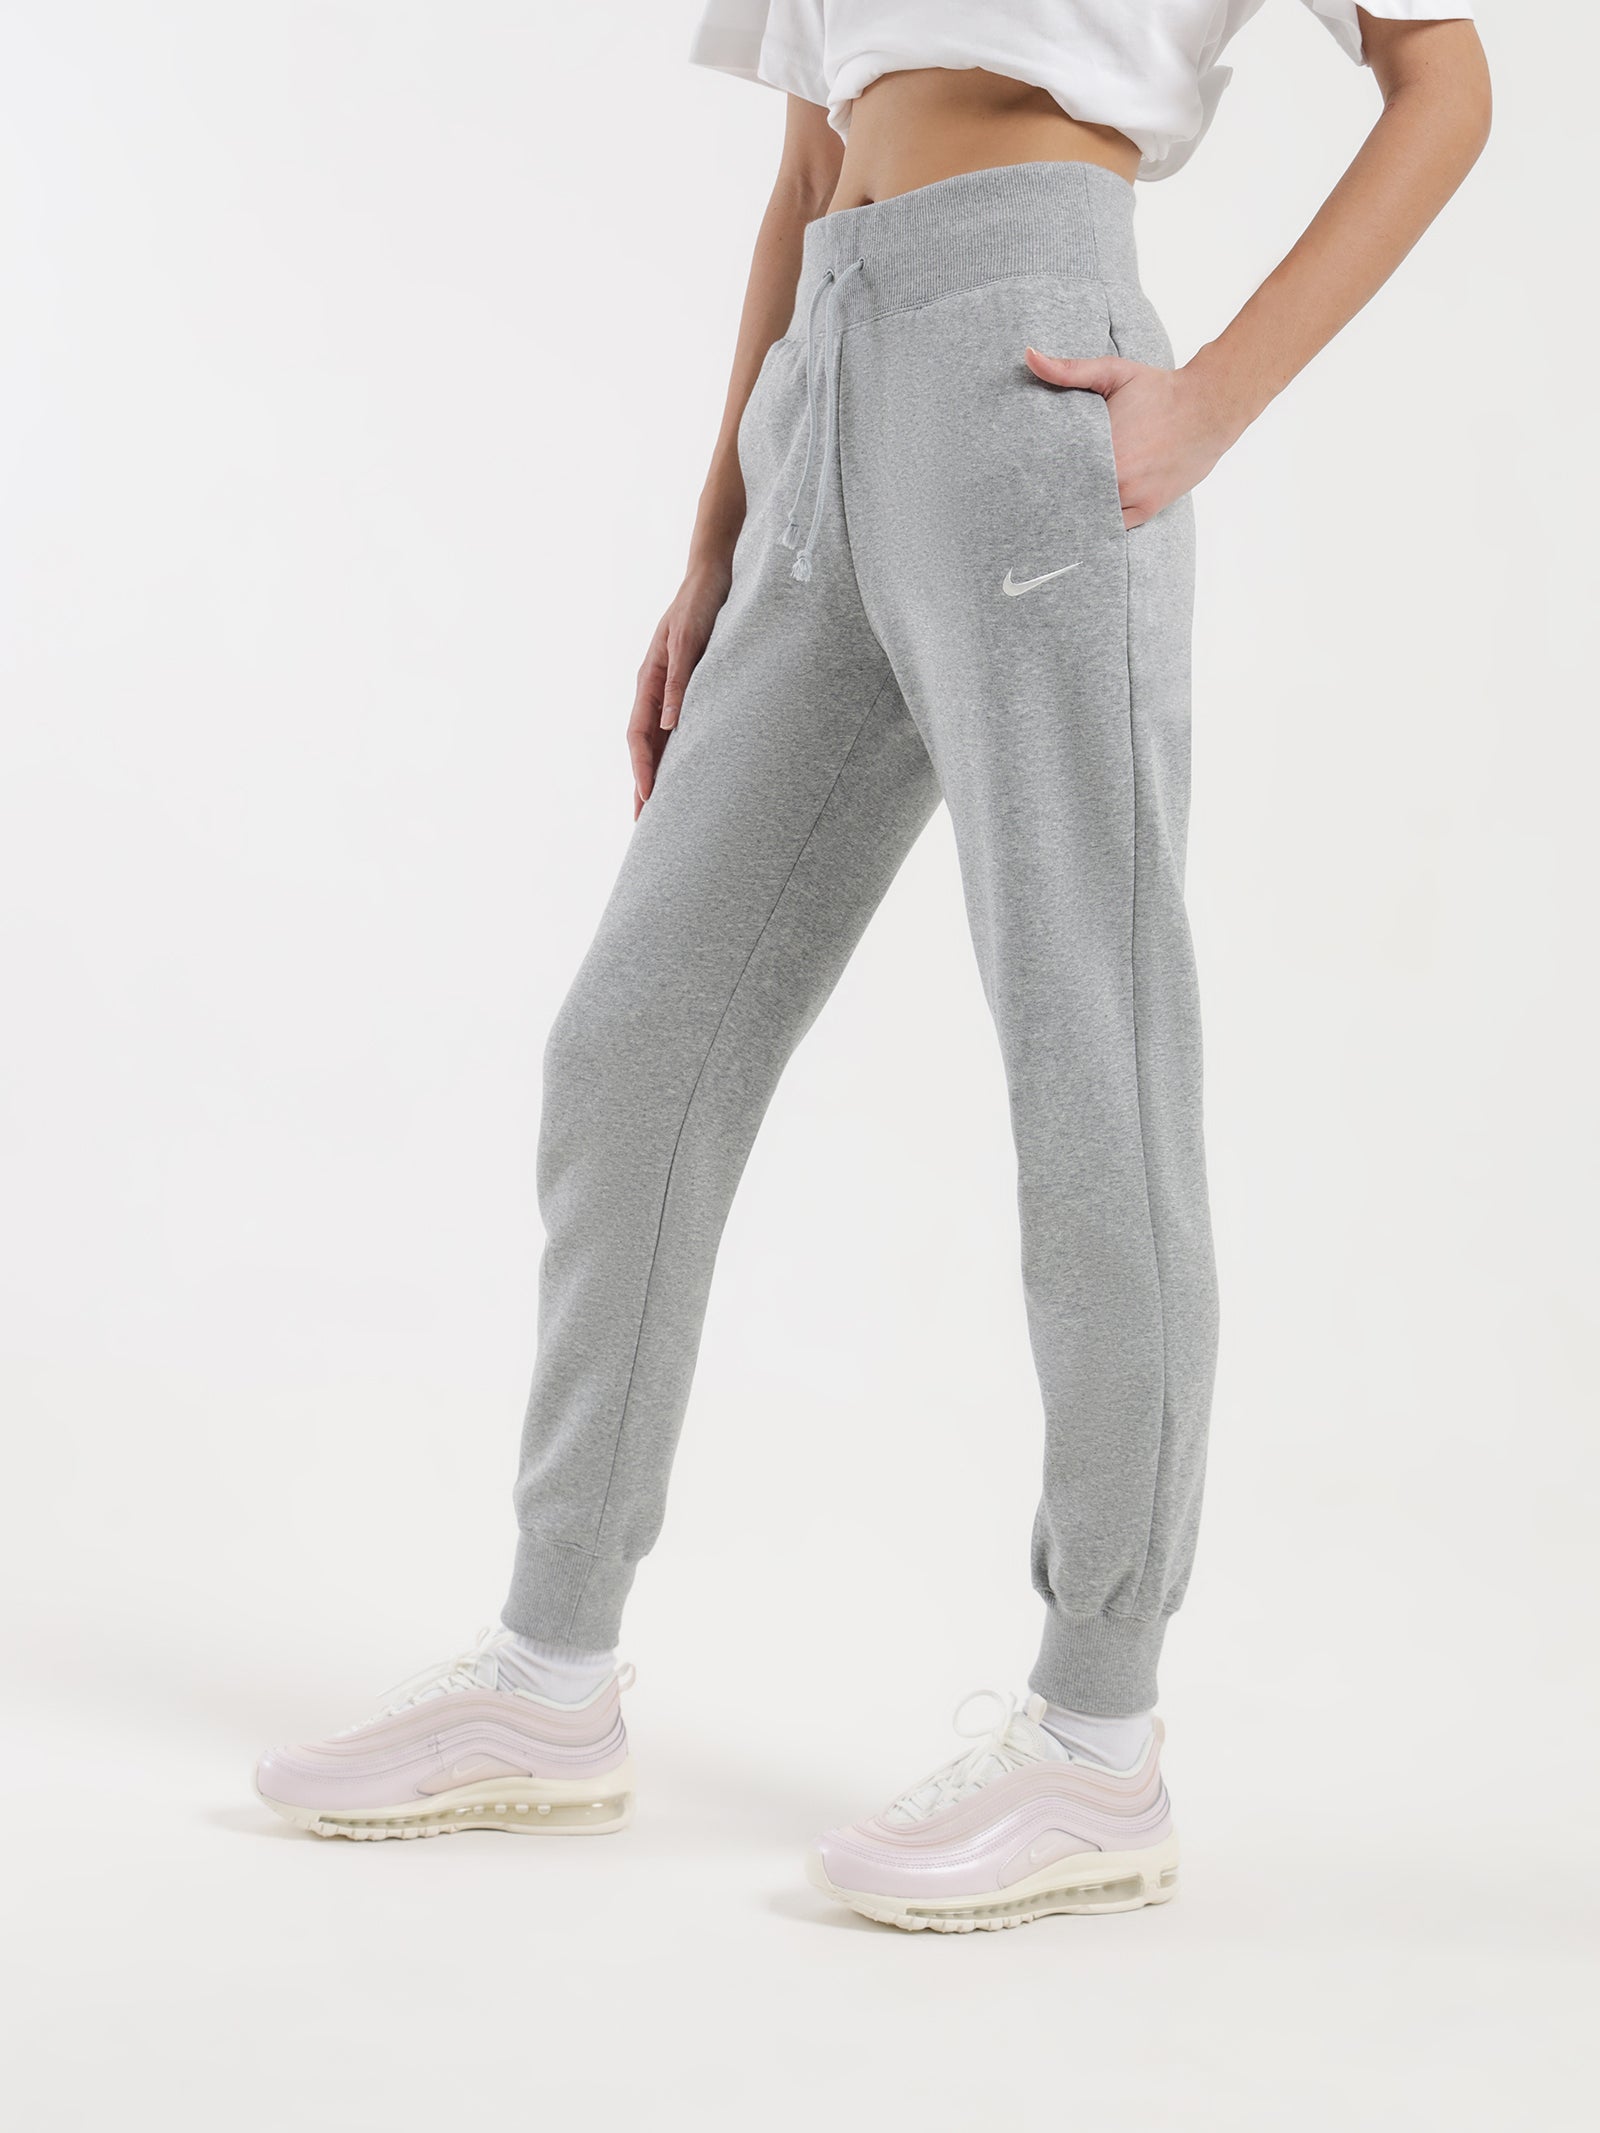 Sportswear Phoenix Fleece High Rise Pants in Dark Grey Heather